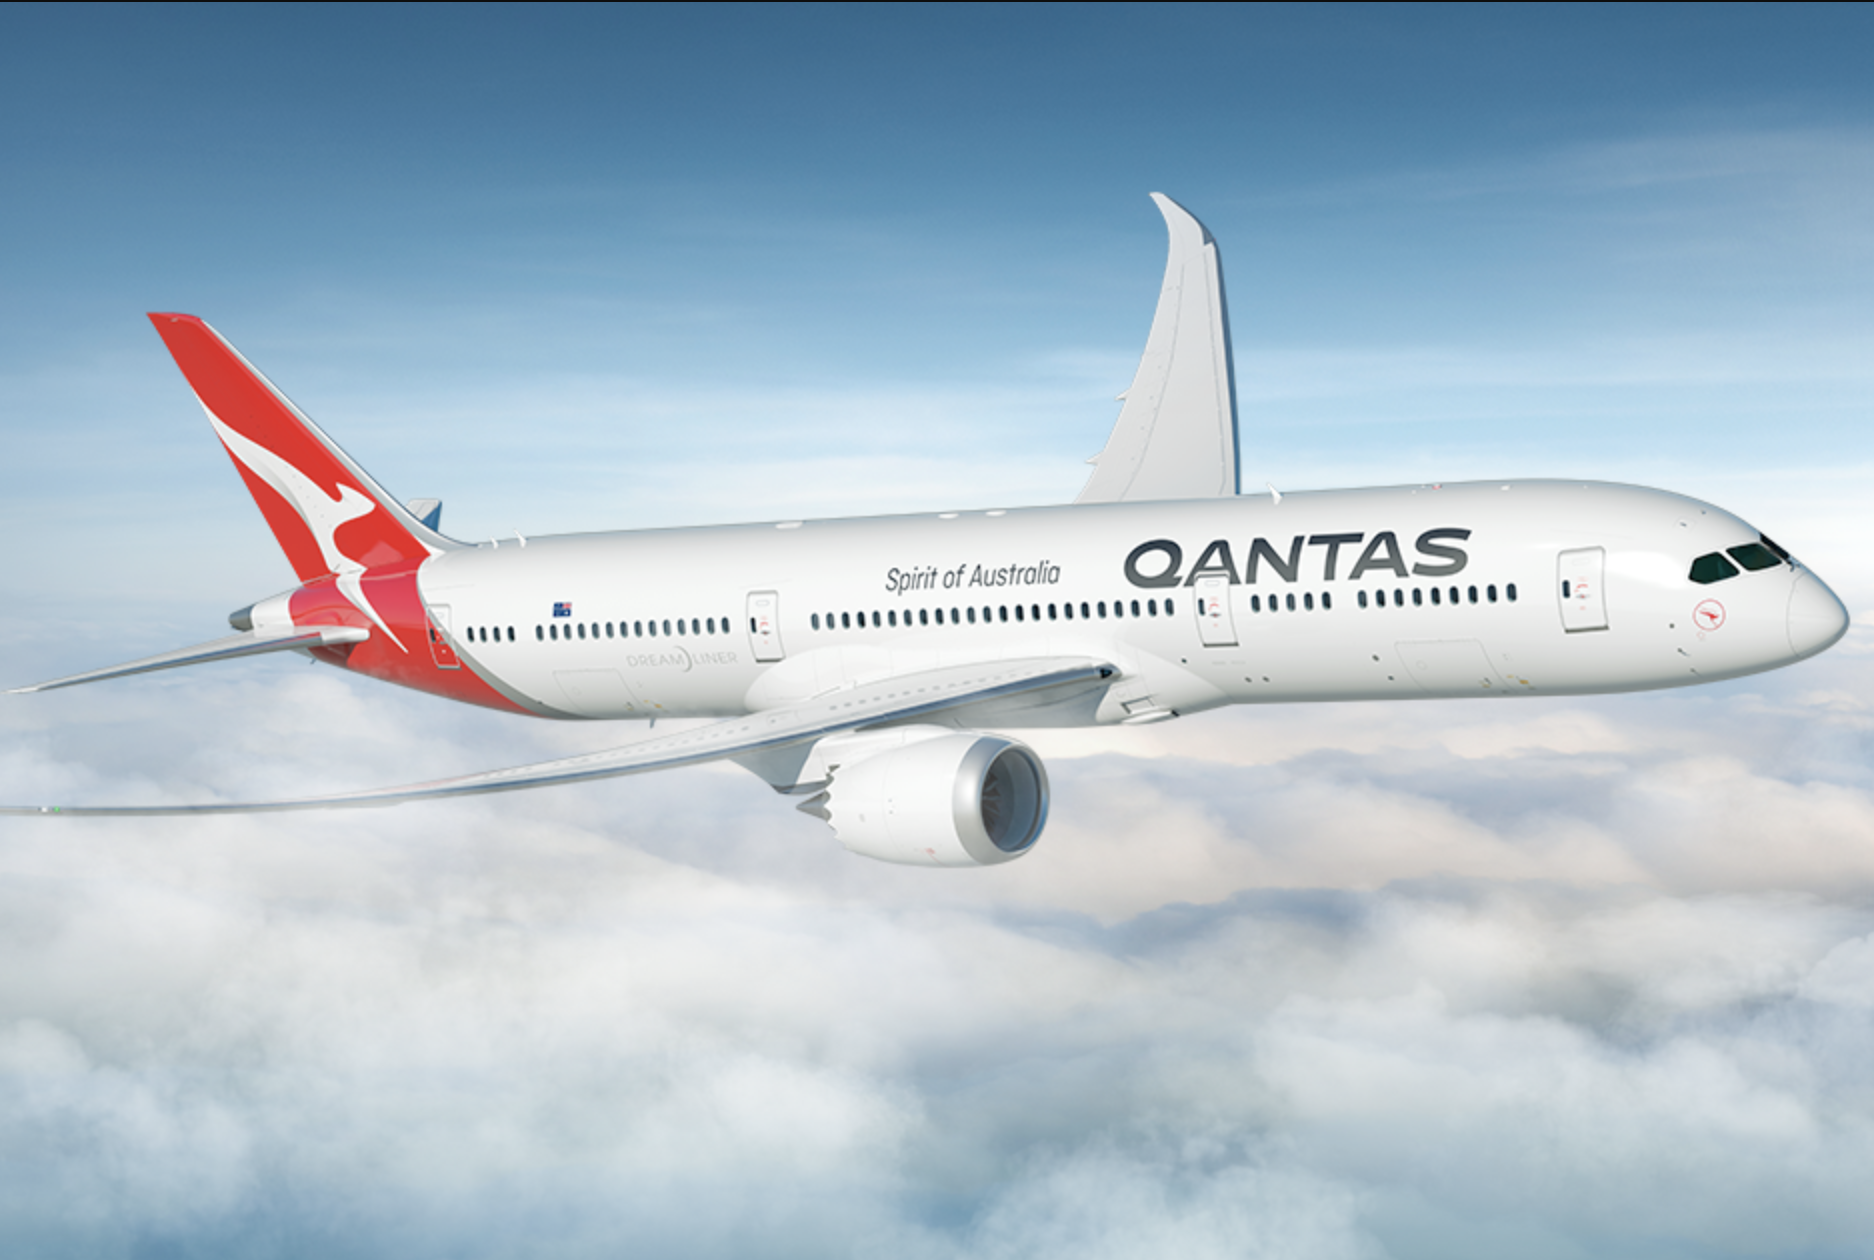 qantas group travel.com